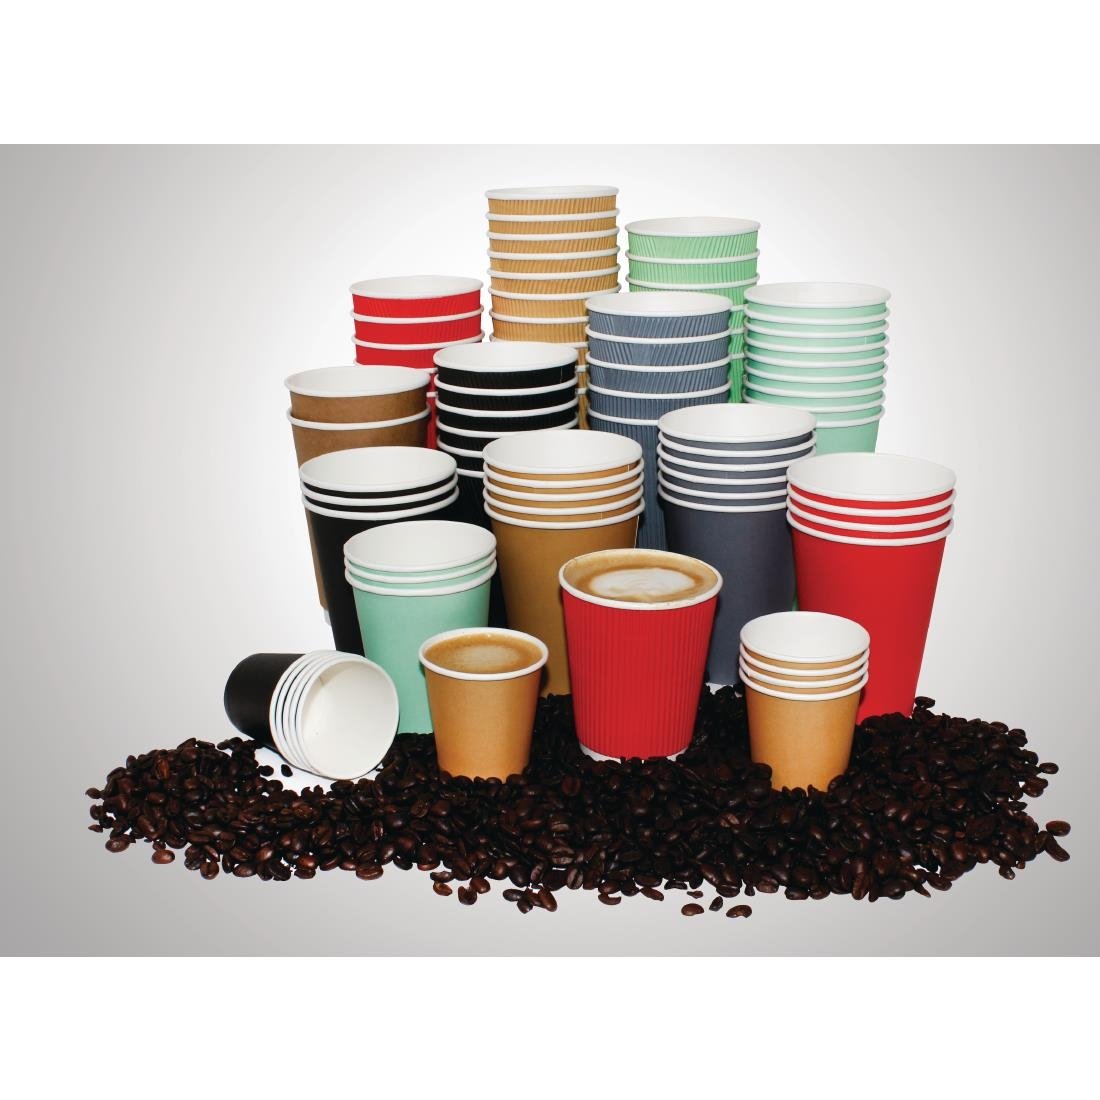 Fiesta Ripple Wall Takeaway Coffee Cups Black 455ml / 16oz JD Catering Equipment Solutions Ltd